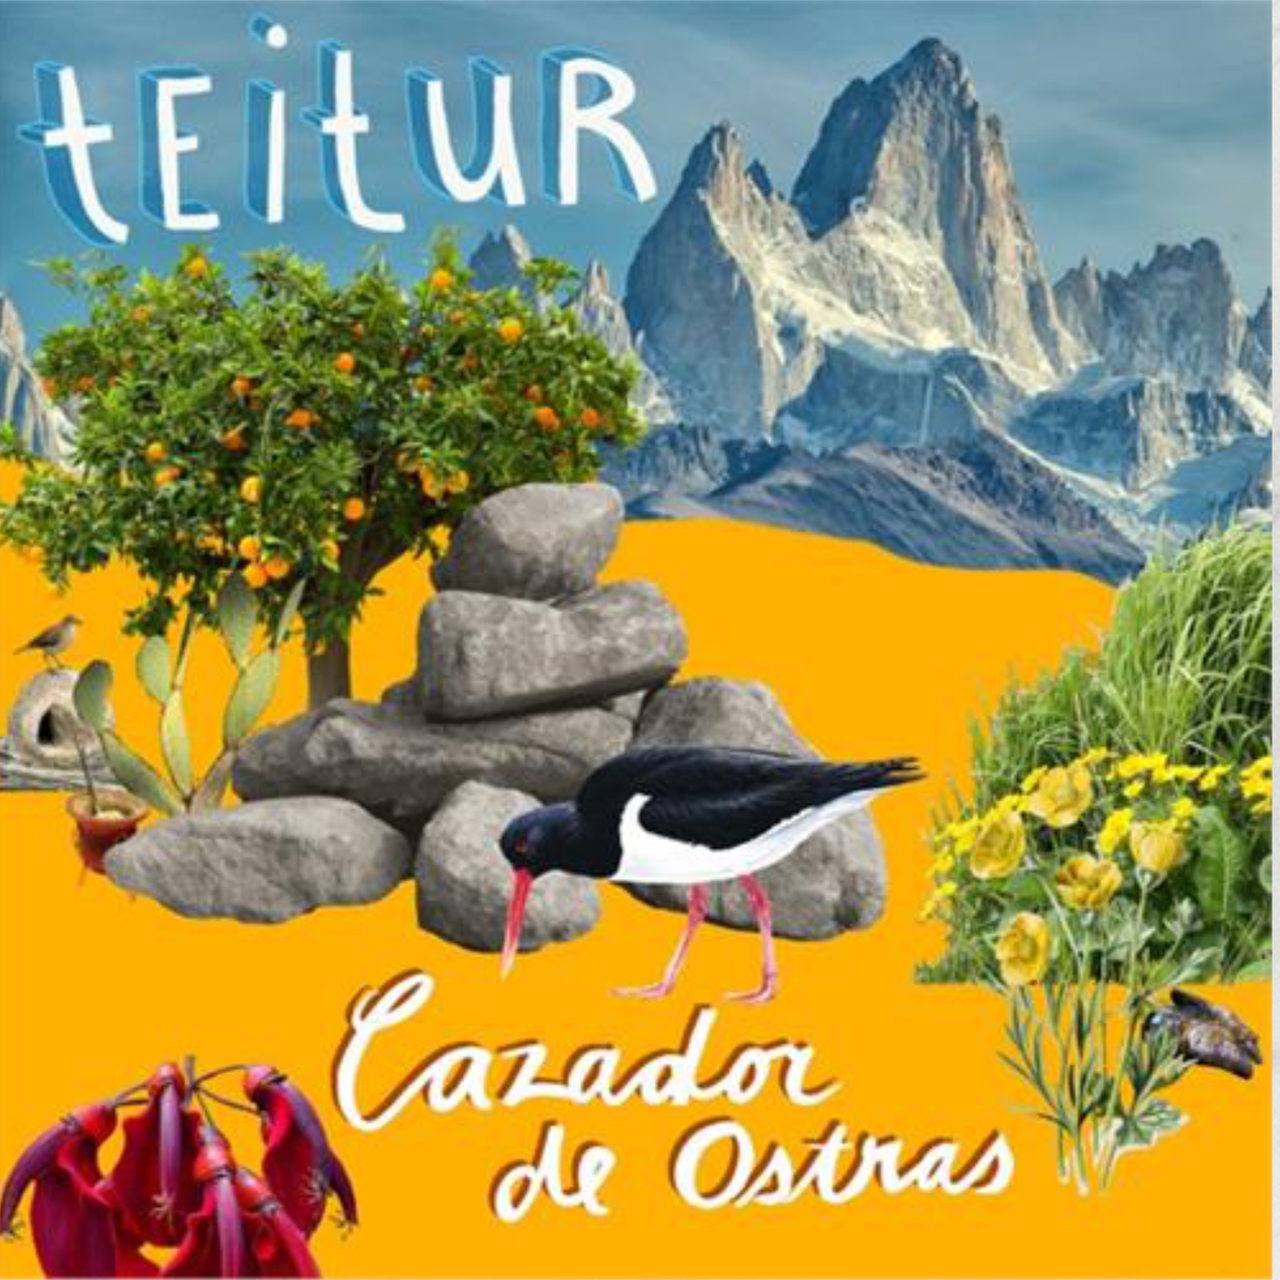 Cover: Teitur, Cazador de ostras, Arlo and Betty Recordings